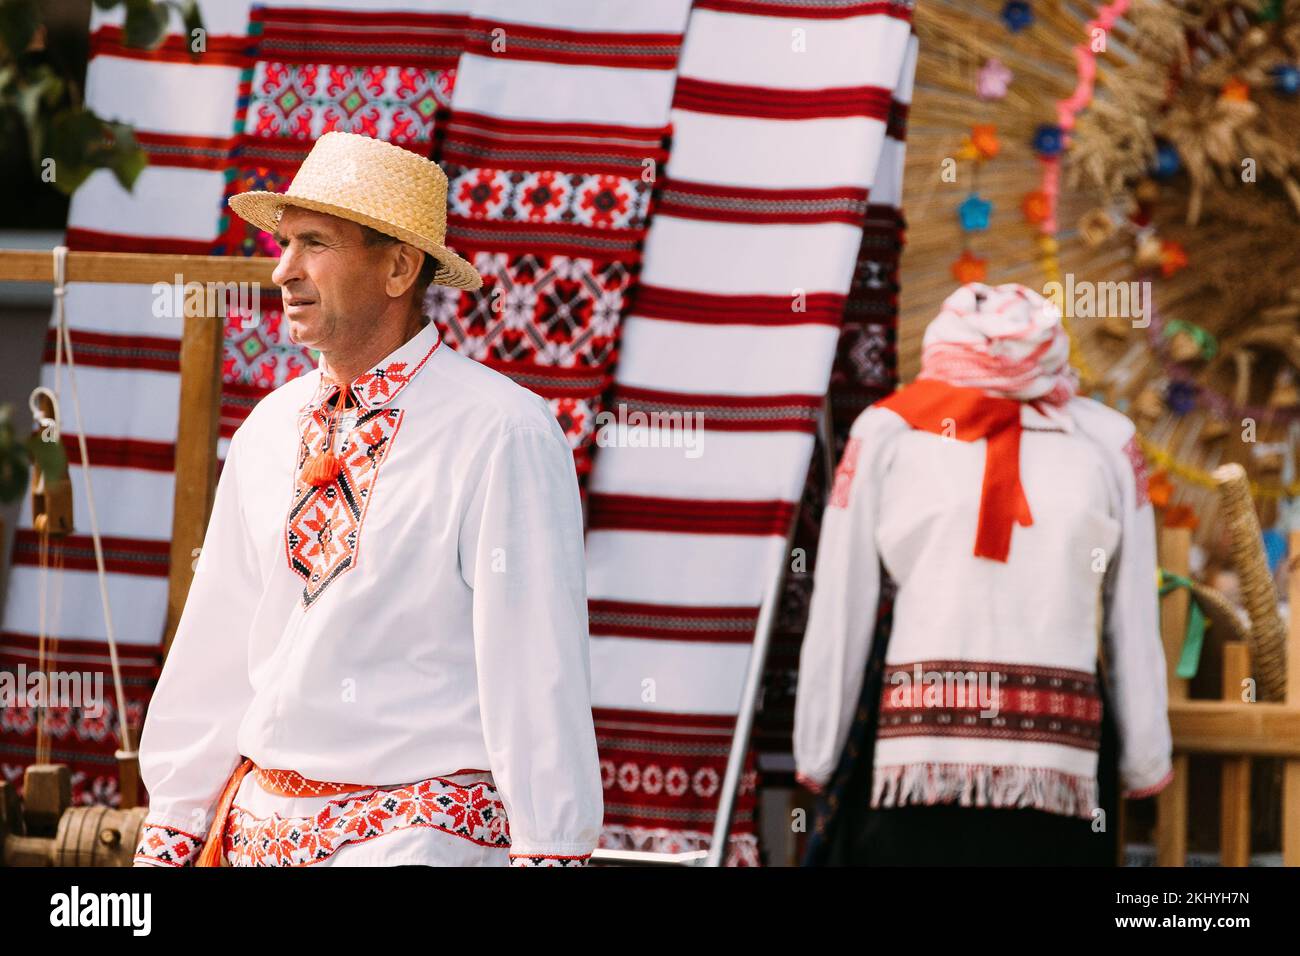 Hombre adulto con ropa tradicional bielorrusa en el Festival Folk de Minsk, Bielorrusia. Foto de stock